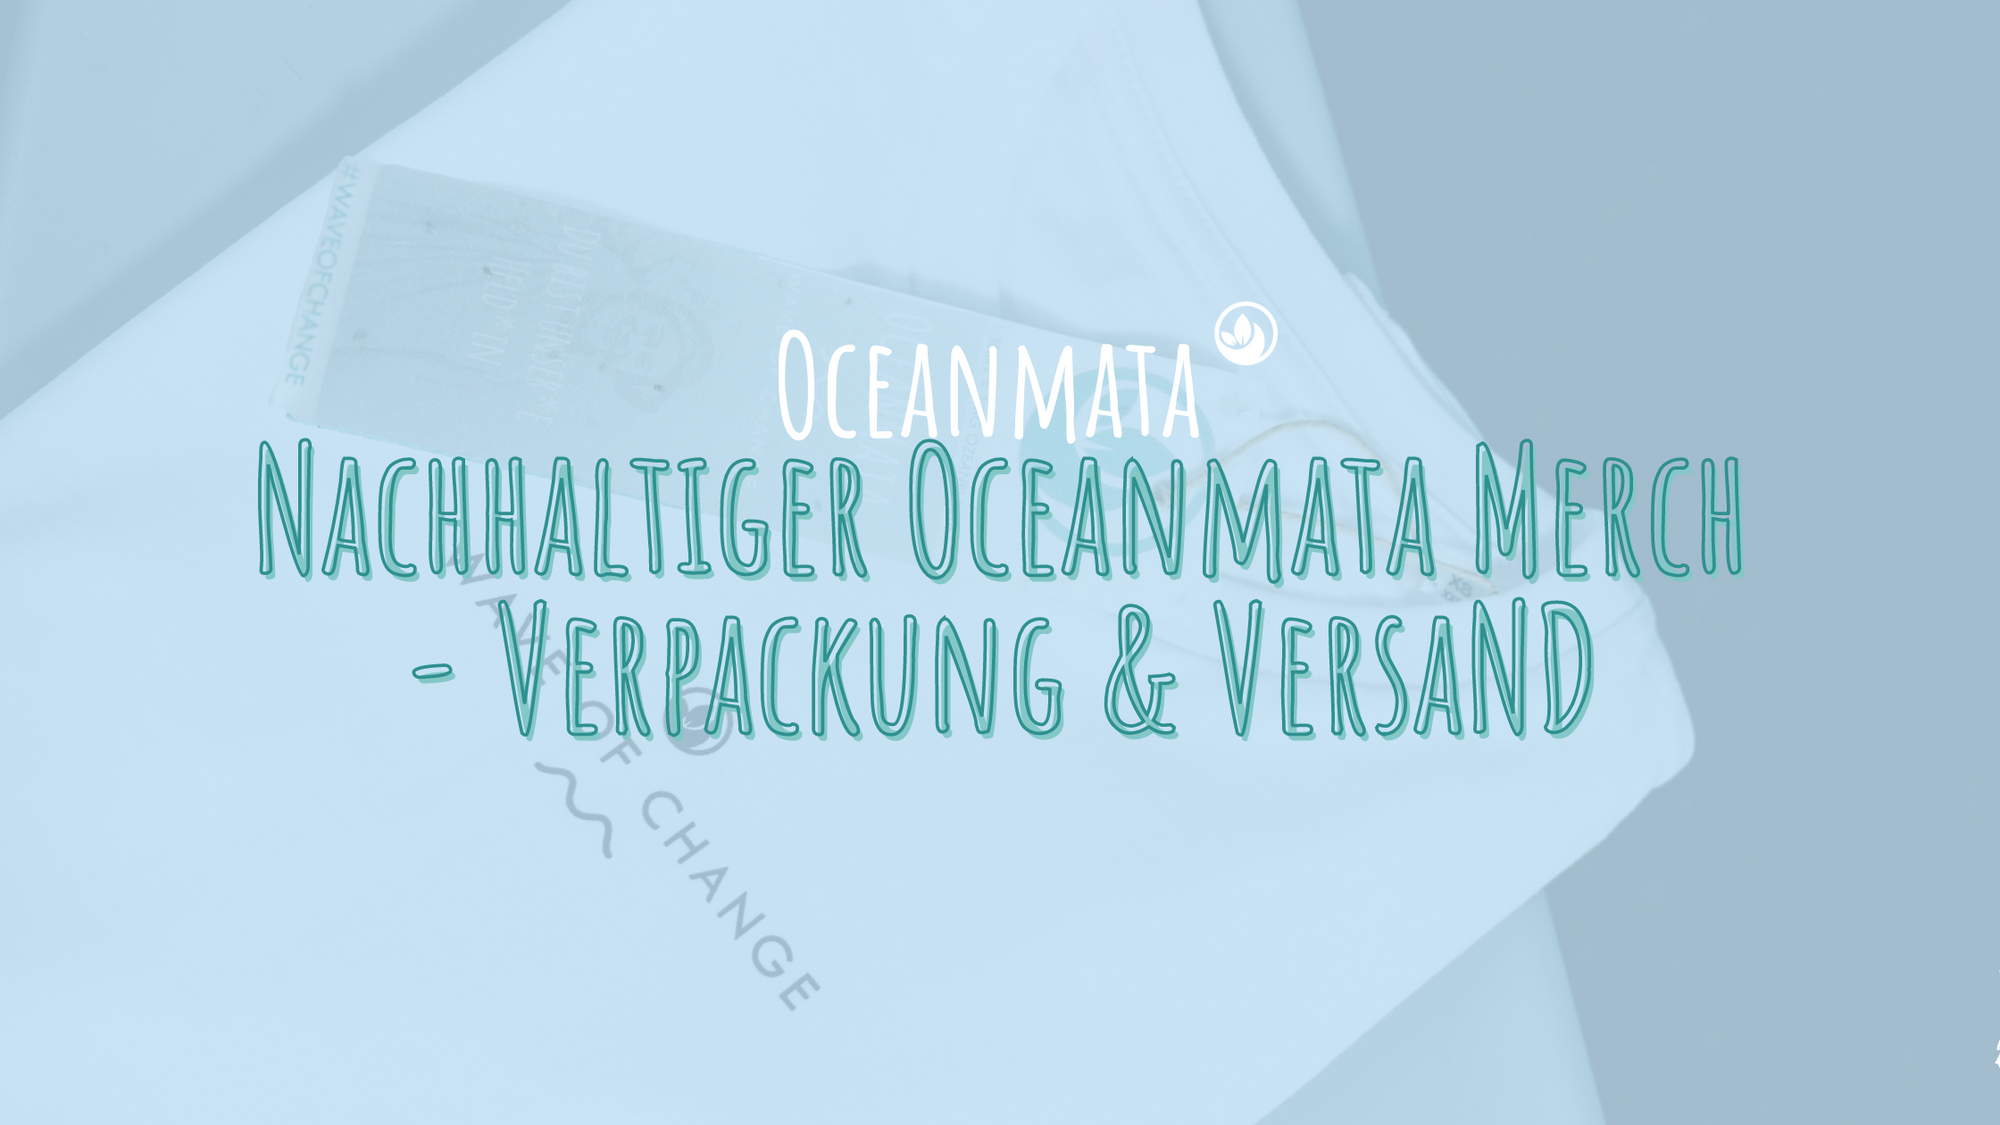 Nachhaltiger Oceanmata Merch - Verpackung & Versand